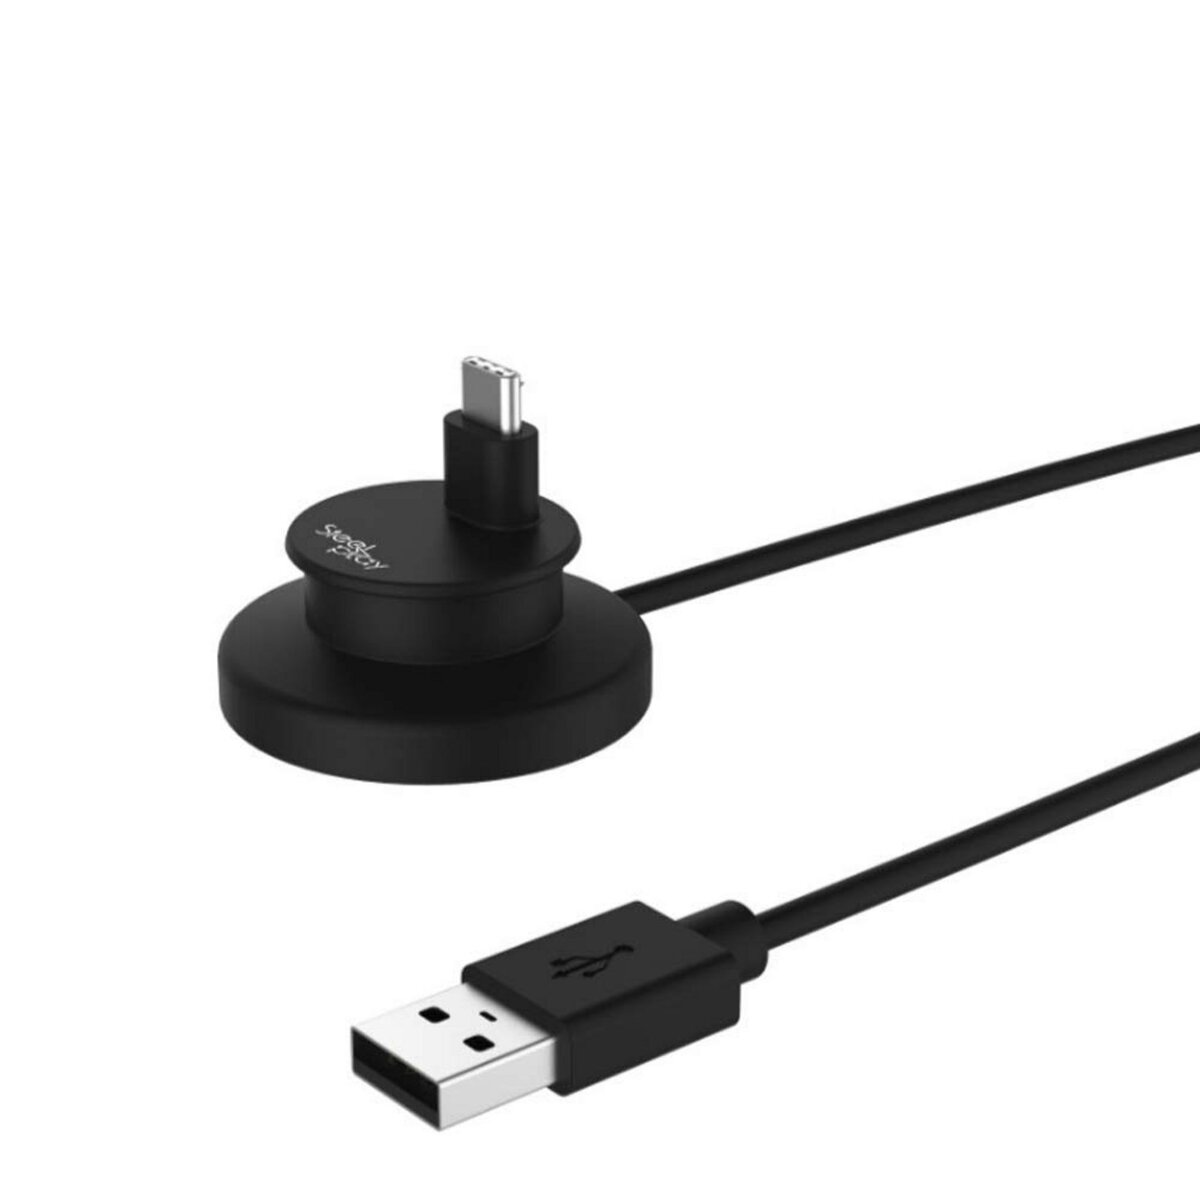 Chargeur USB pour Manette PokéBall Plus - Nintendo Switch pas cher